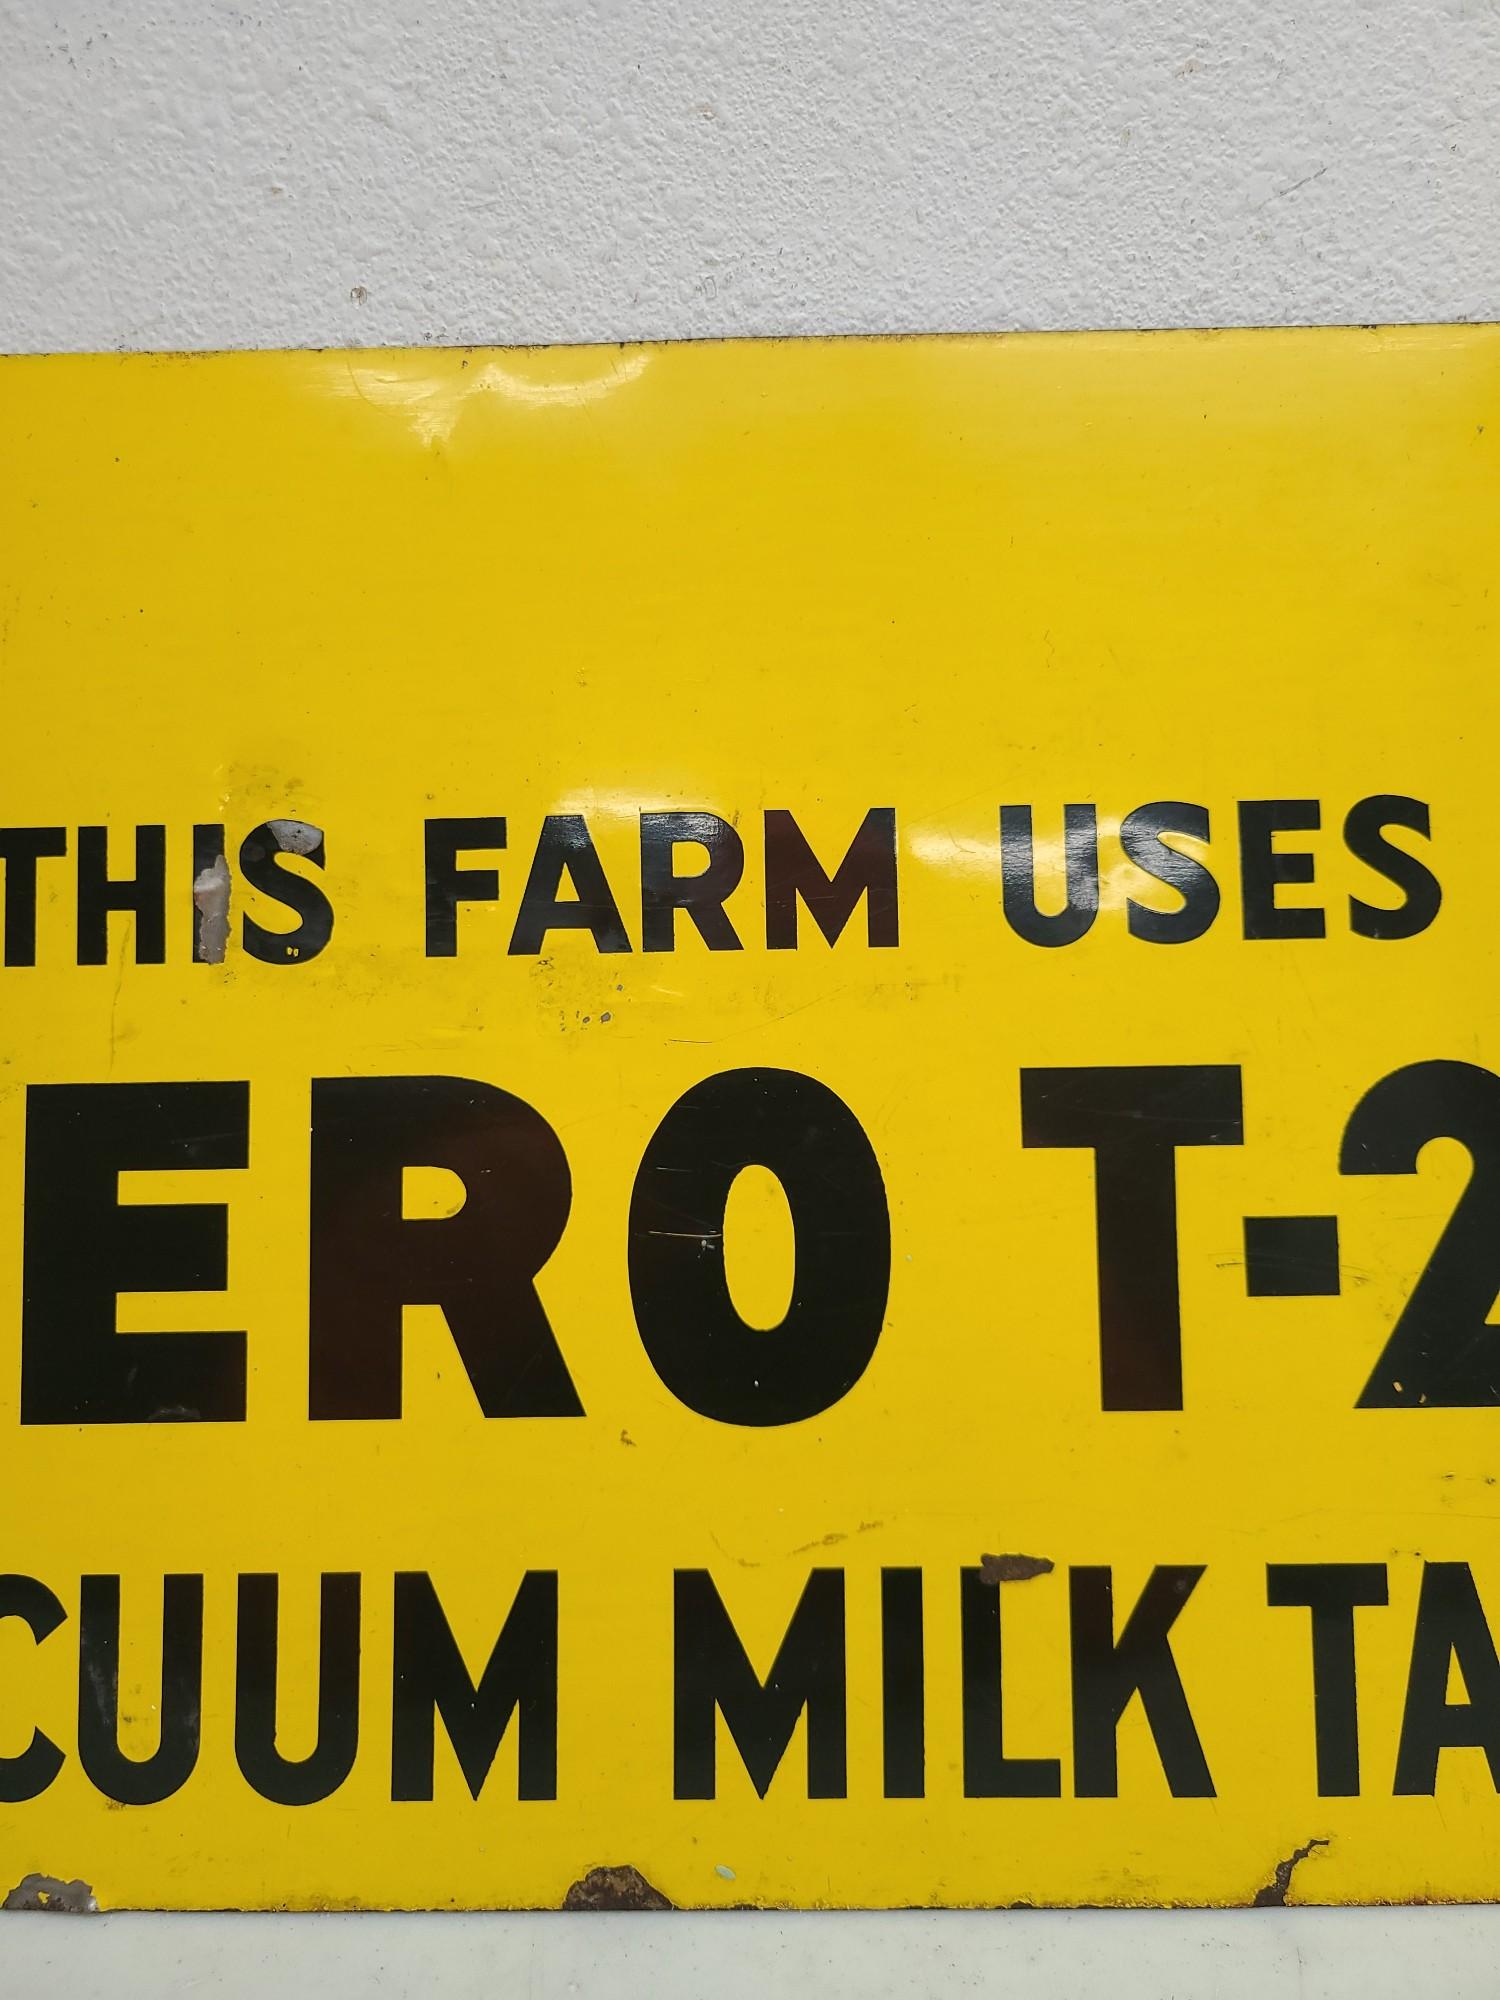 SST, Vacuum Milk Tank Sign